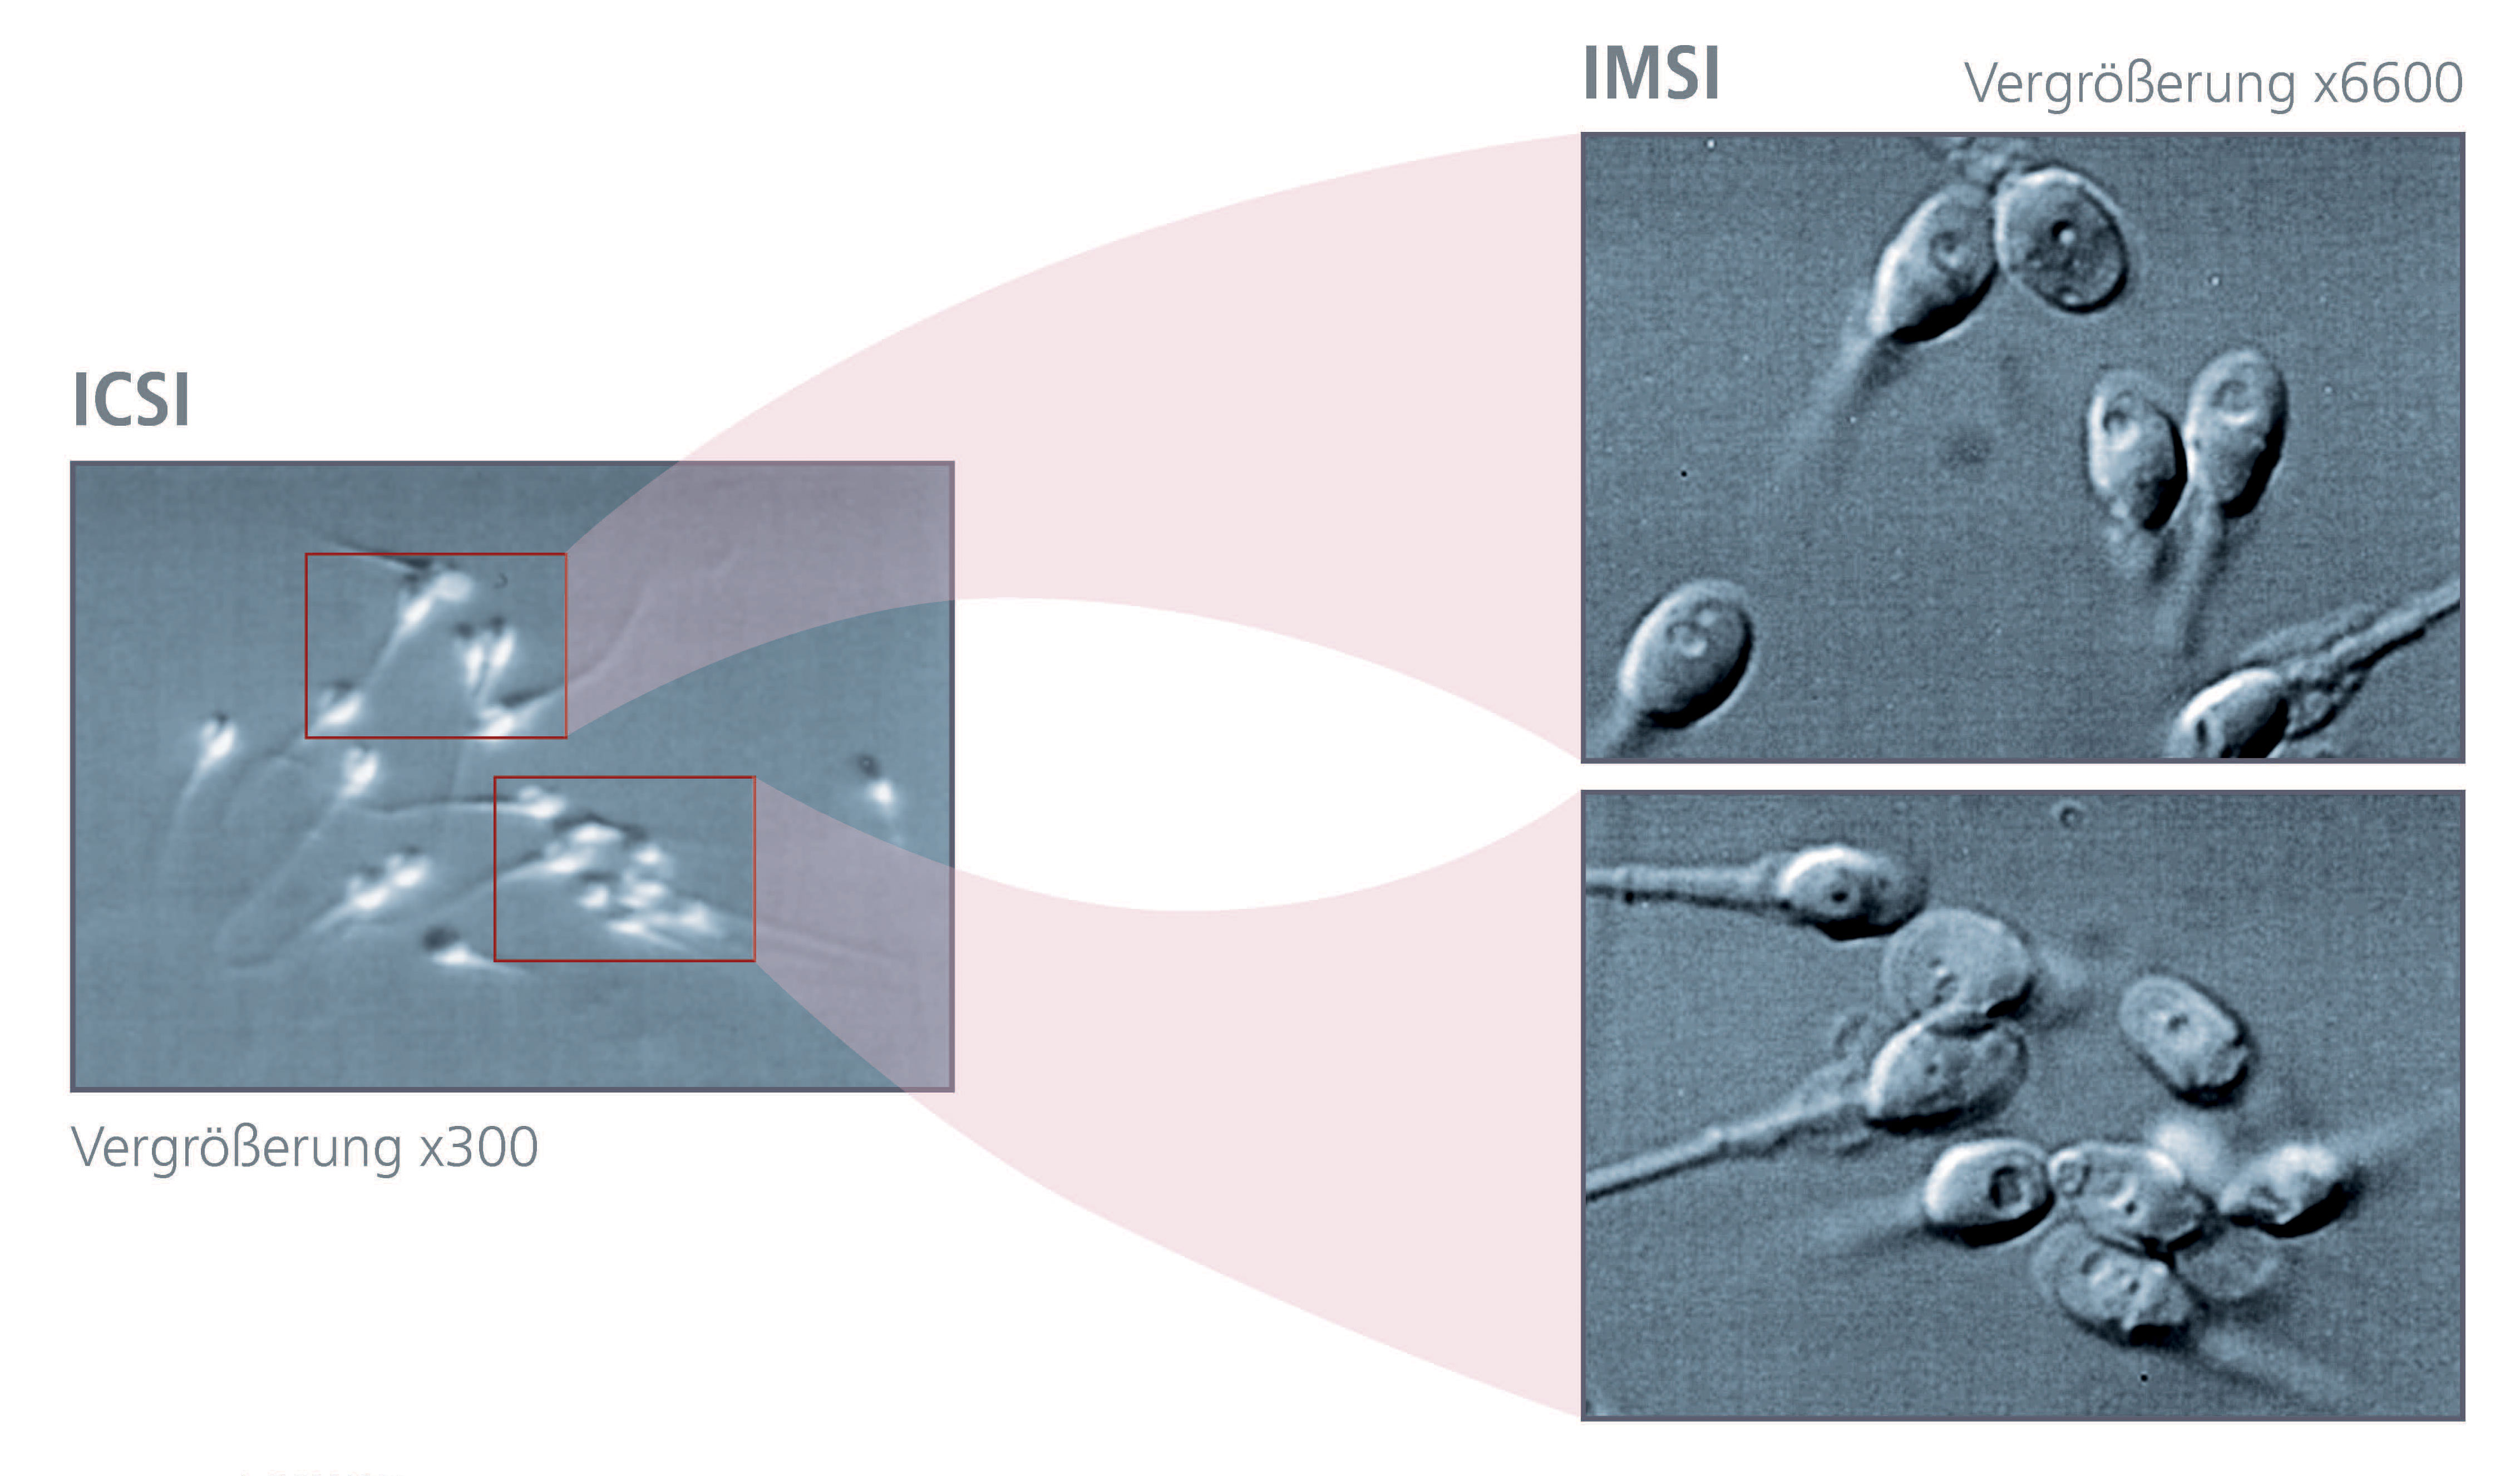 Abbildung der mikroskopischen Samenanalyse bei einer Kinderwunschbehandlung: Gegenüberstellung von ICSI und IMSI │ © 2021 Next Fertility IVF Prof. Zech